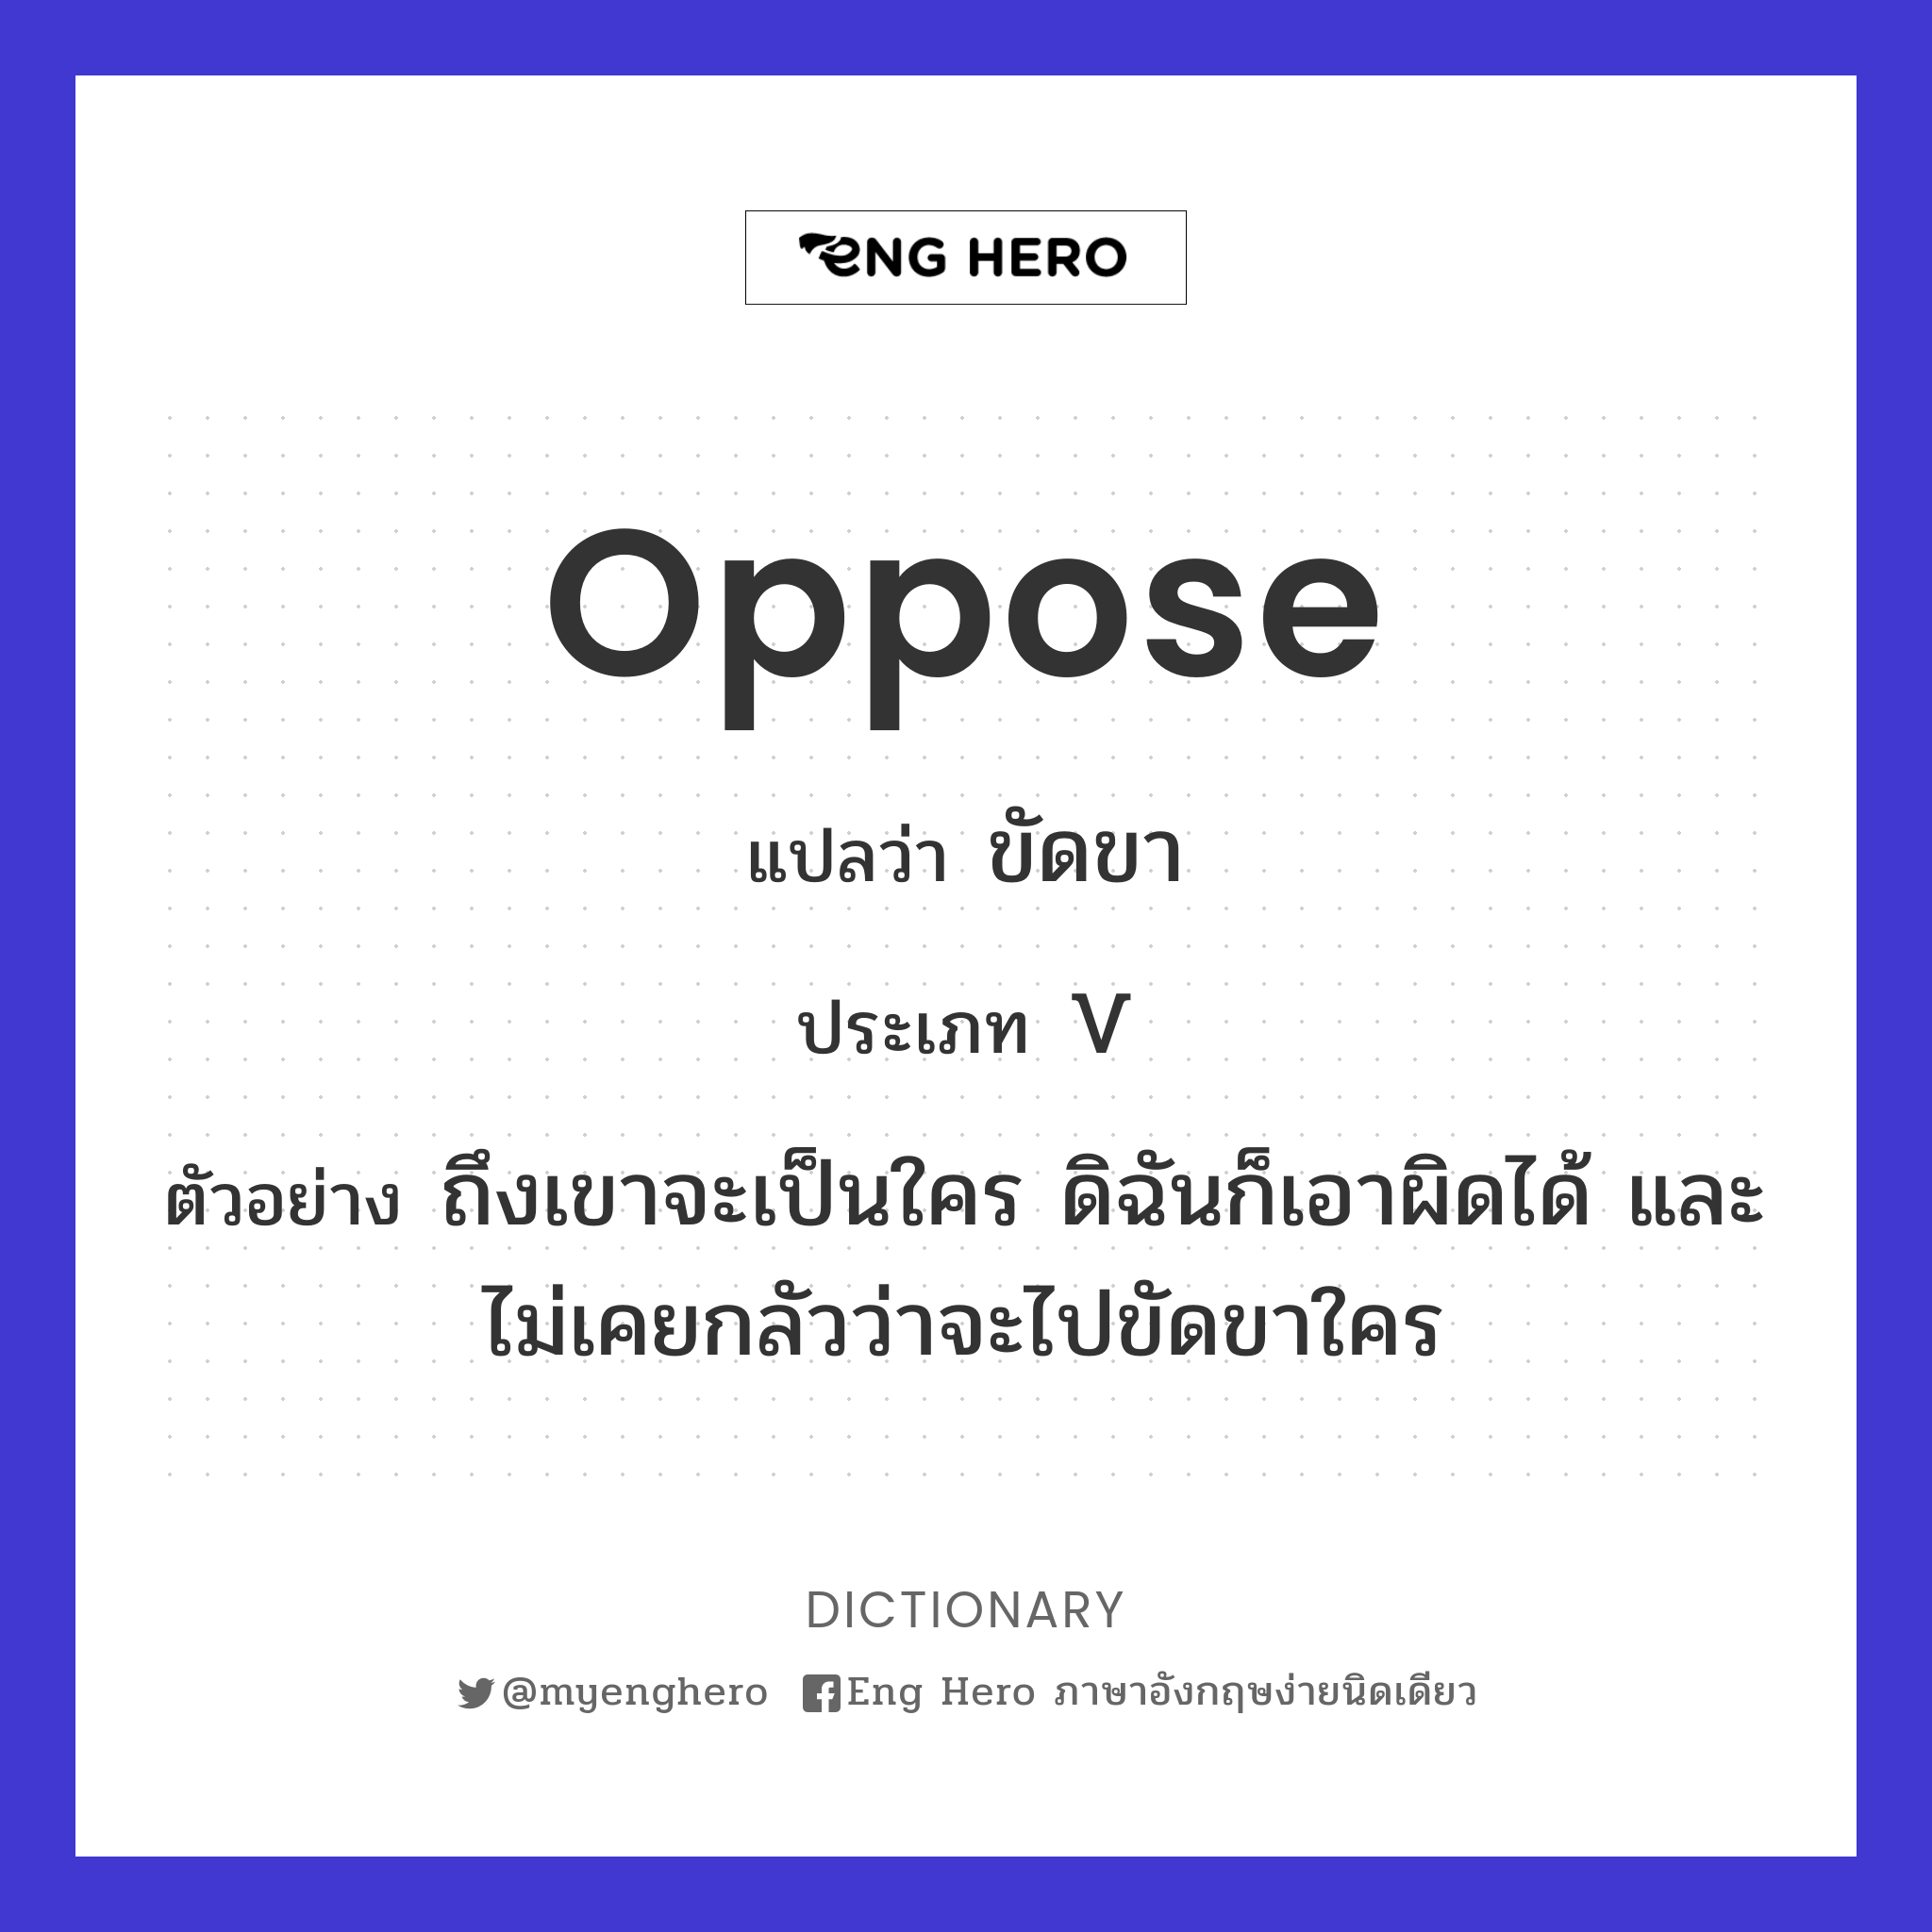 oppose